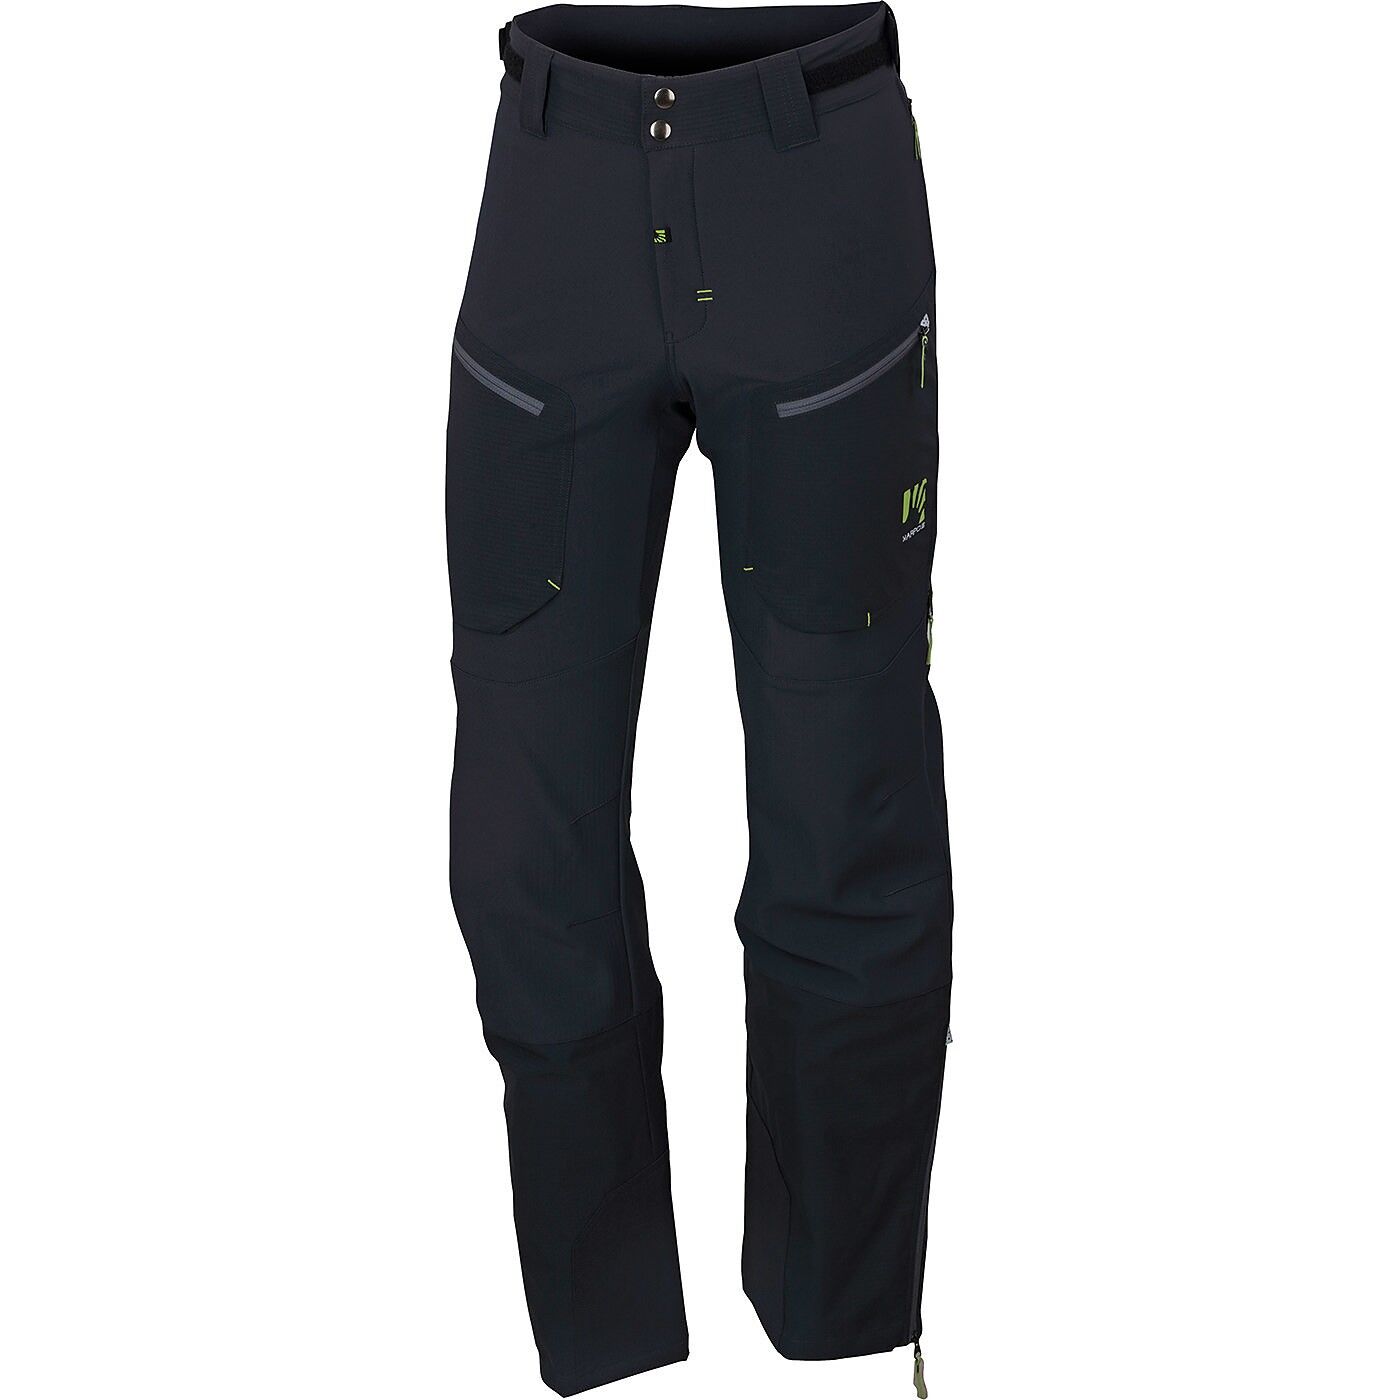 Karpos Mountain Pant - Walking trousers - Men's